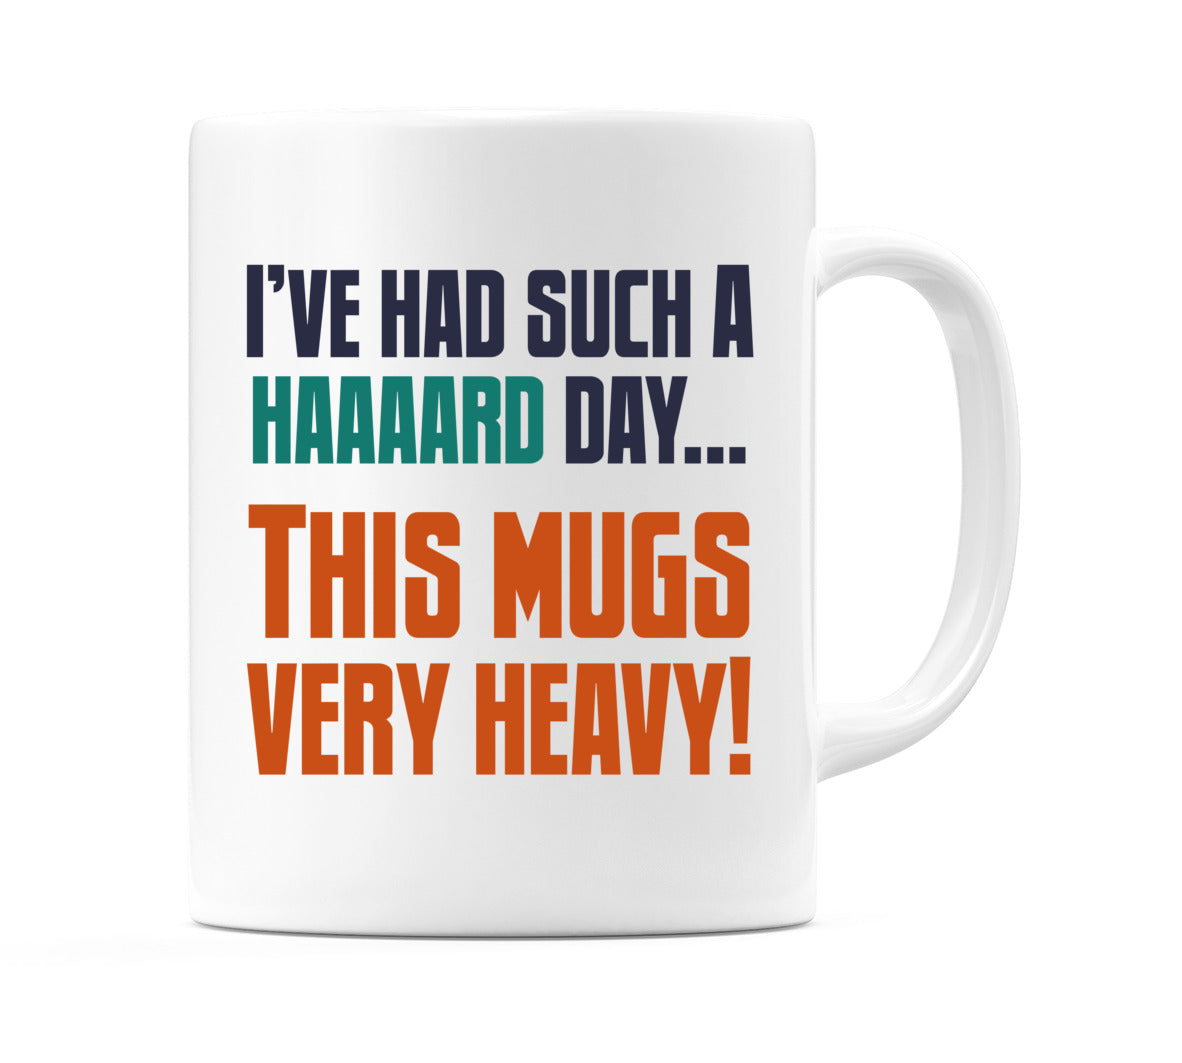 I've Had Such a Haaaard Day... This Mugs Very Heavy! Mug